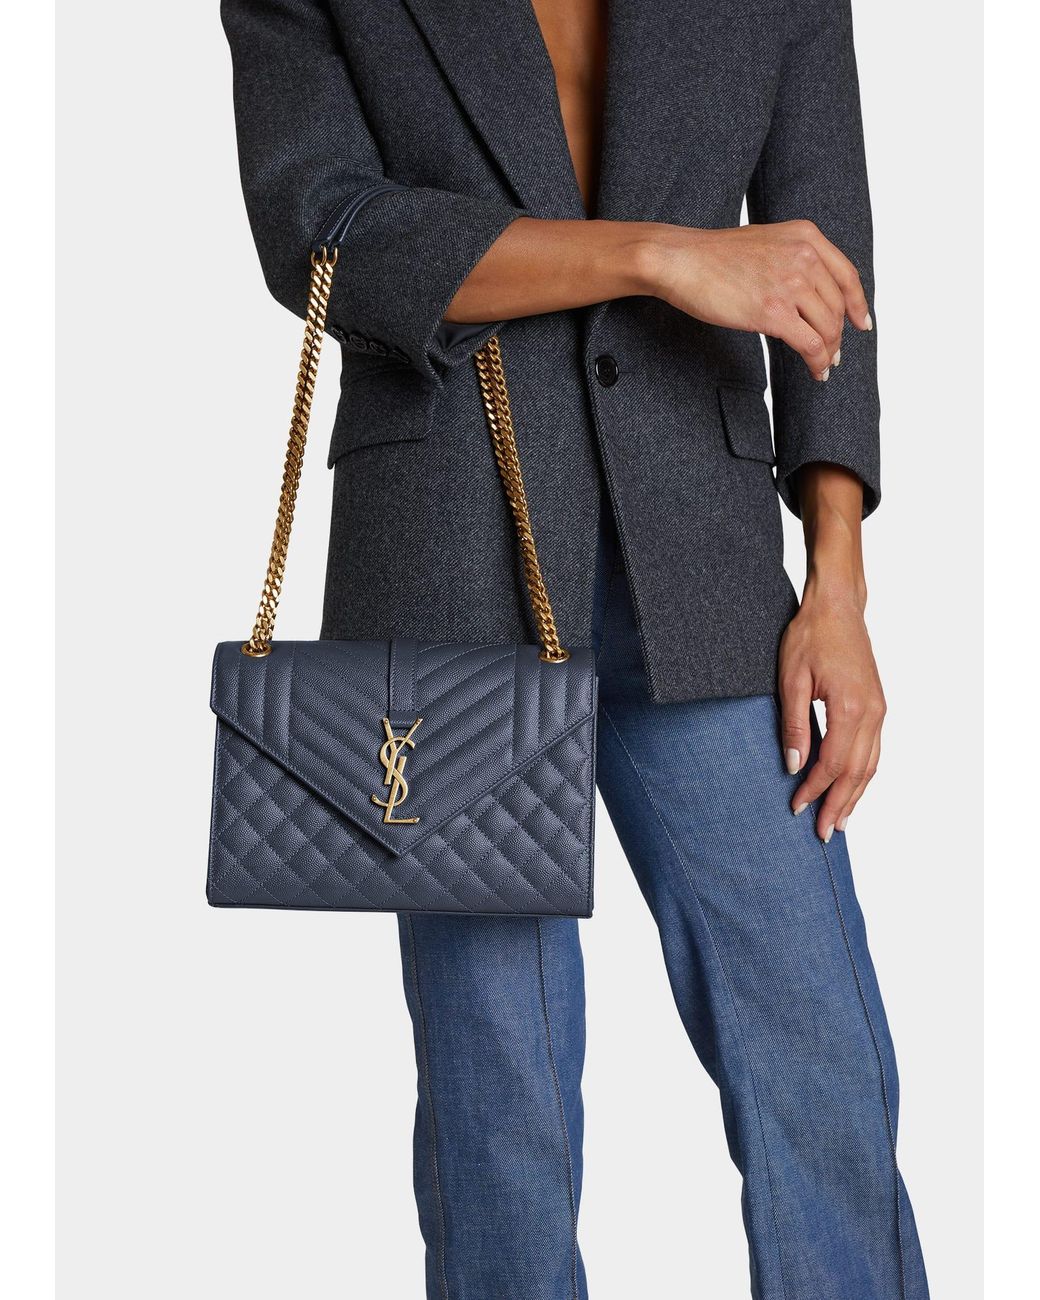 Saint Laurent Triquilt Small Grained Leather Crossbody Bag